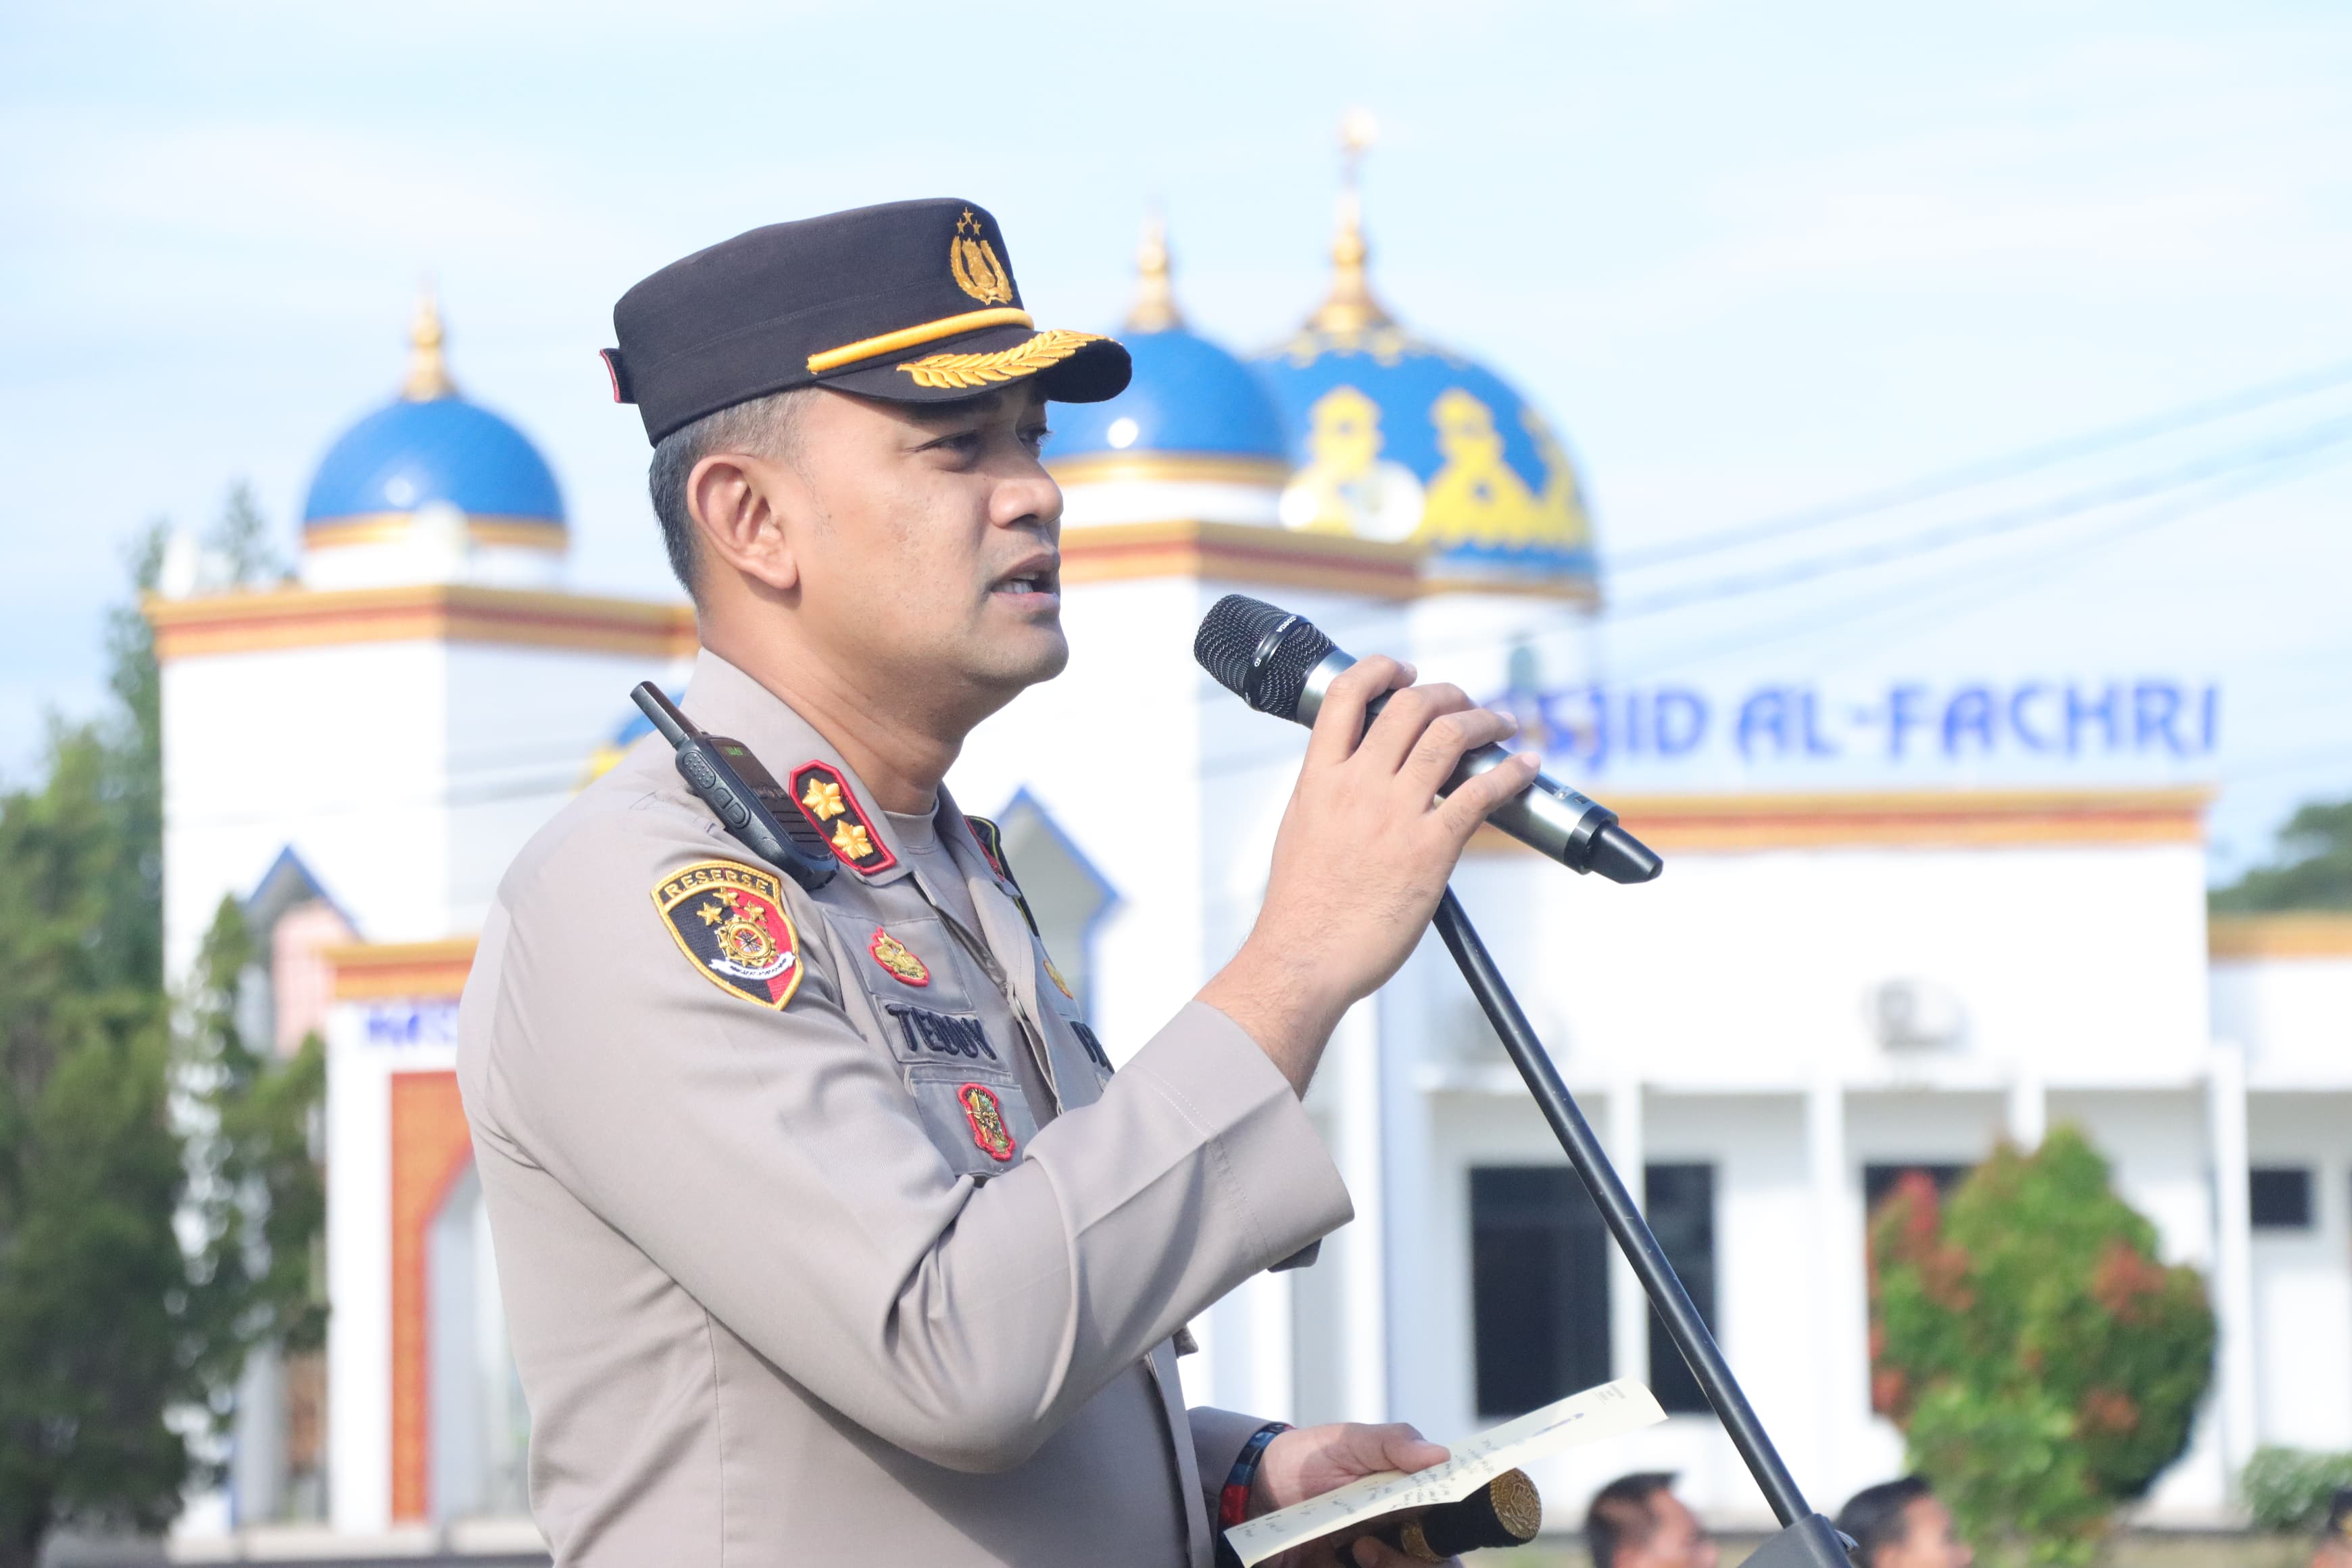 Cegah Anggotanya Bermain Judi Online, Polres Lampung Utara Bentuk Posko Aduan Internal